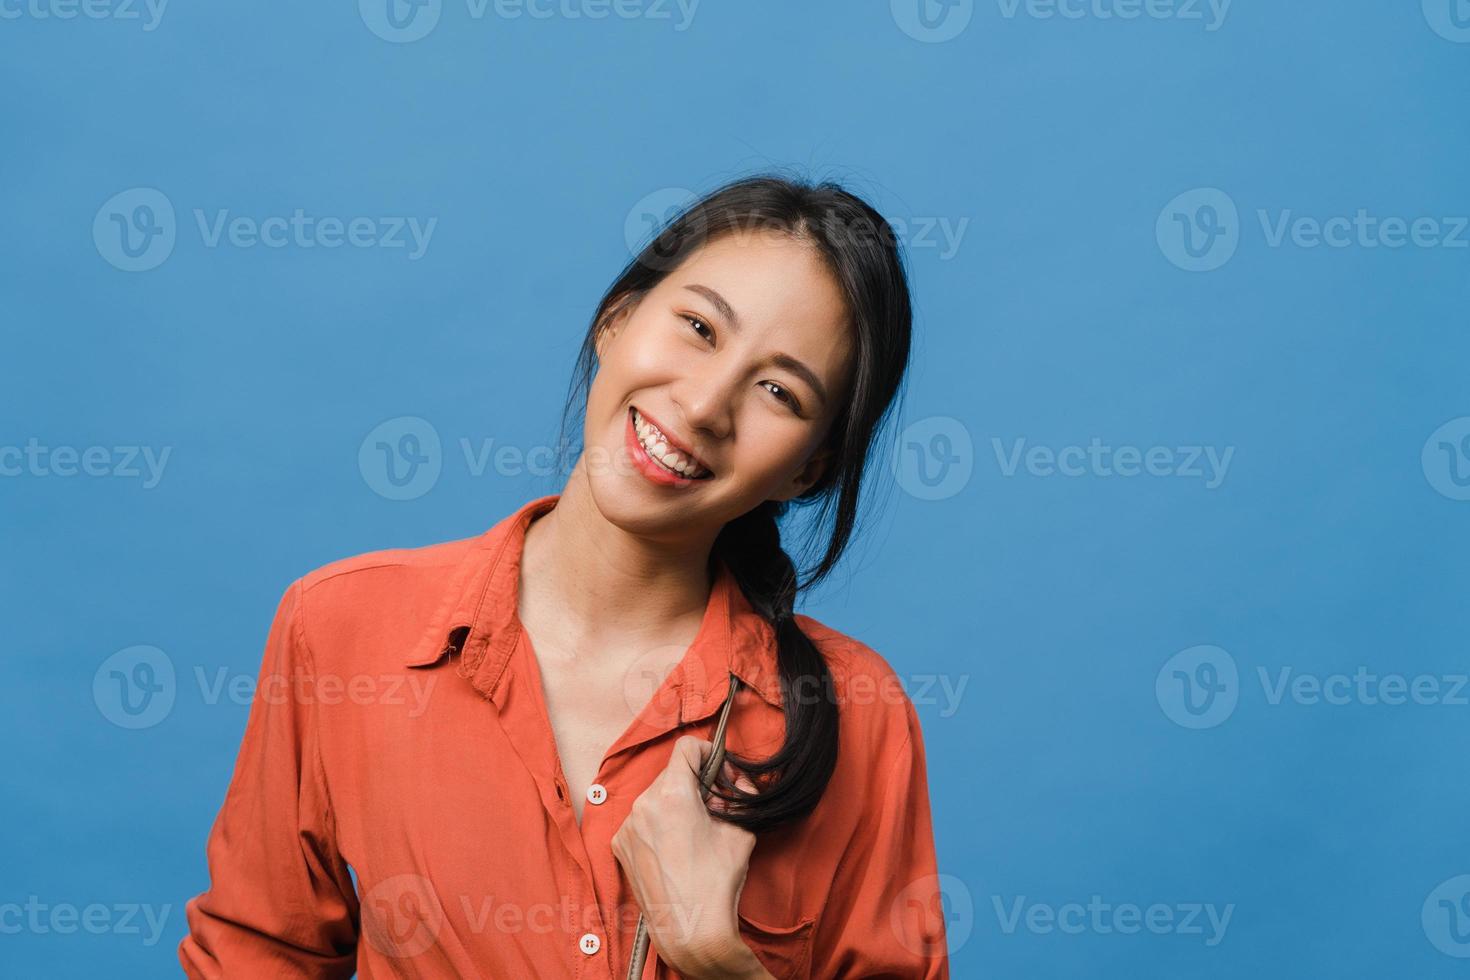 jovem asiática com expressão positiva, sorriso largo, vestida com roupas casuais e olhando para a câmera sobre fundo azul. feliz adorável feliz mulher alegra sucesso. conceito de expressão facial. foto